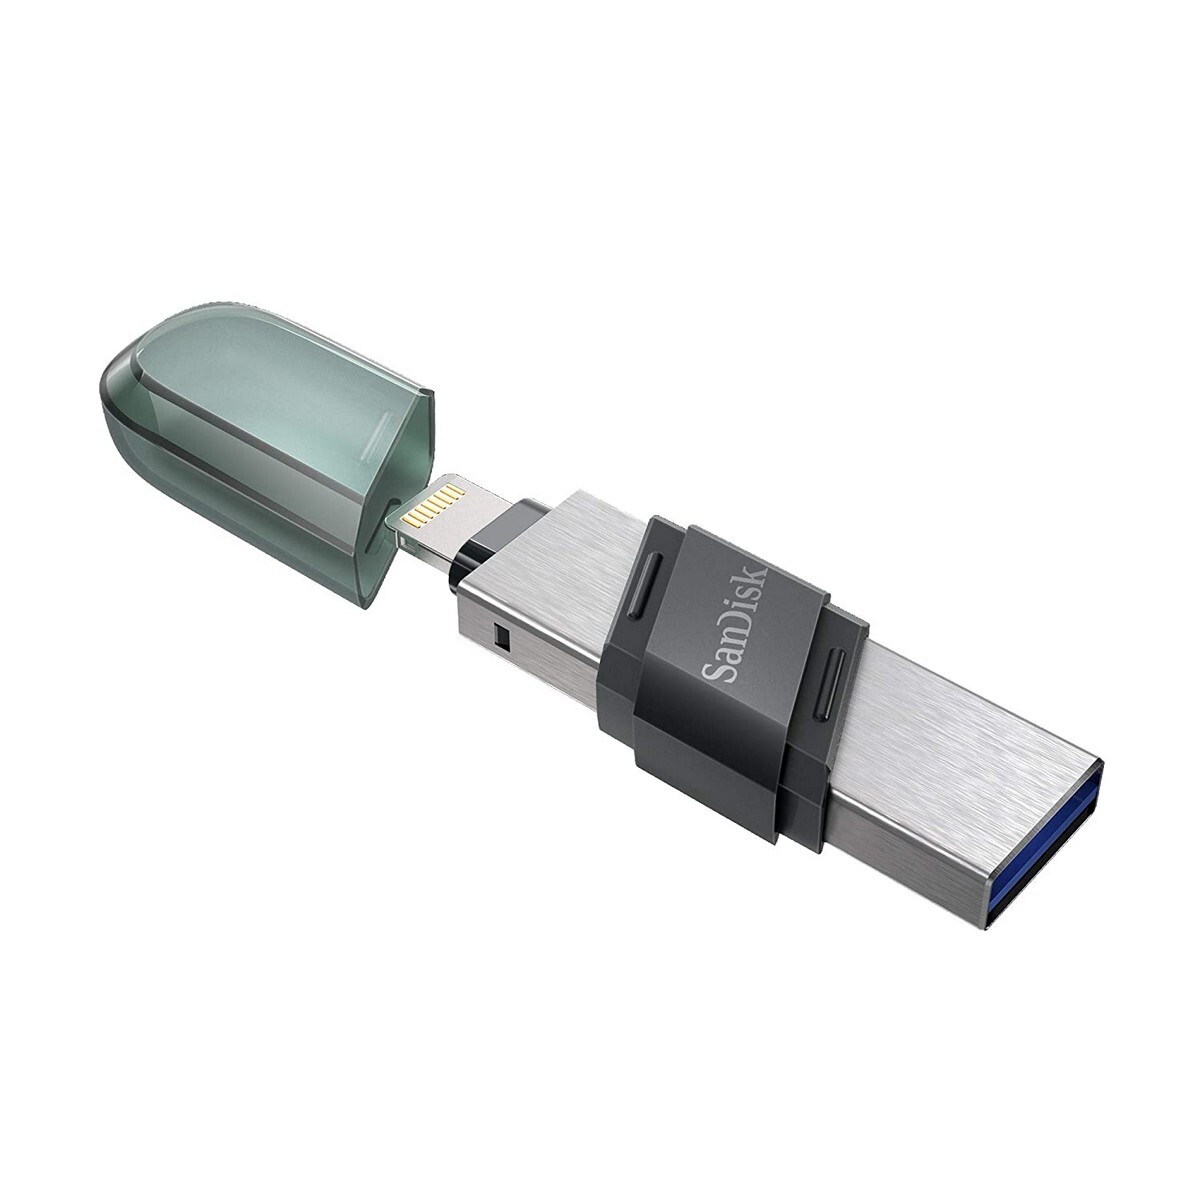 SanDisk iXpand USB 3.0 Flash Drive Flip 128GB